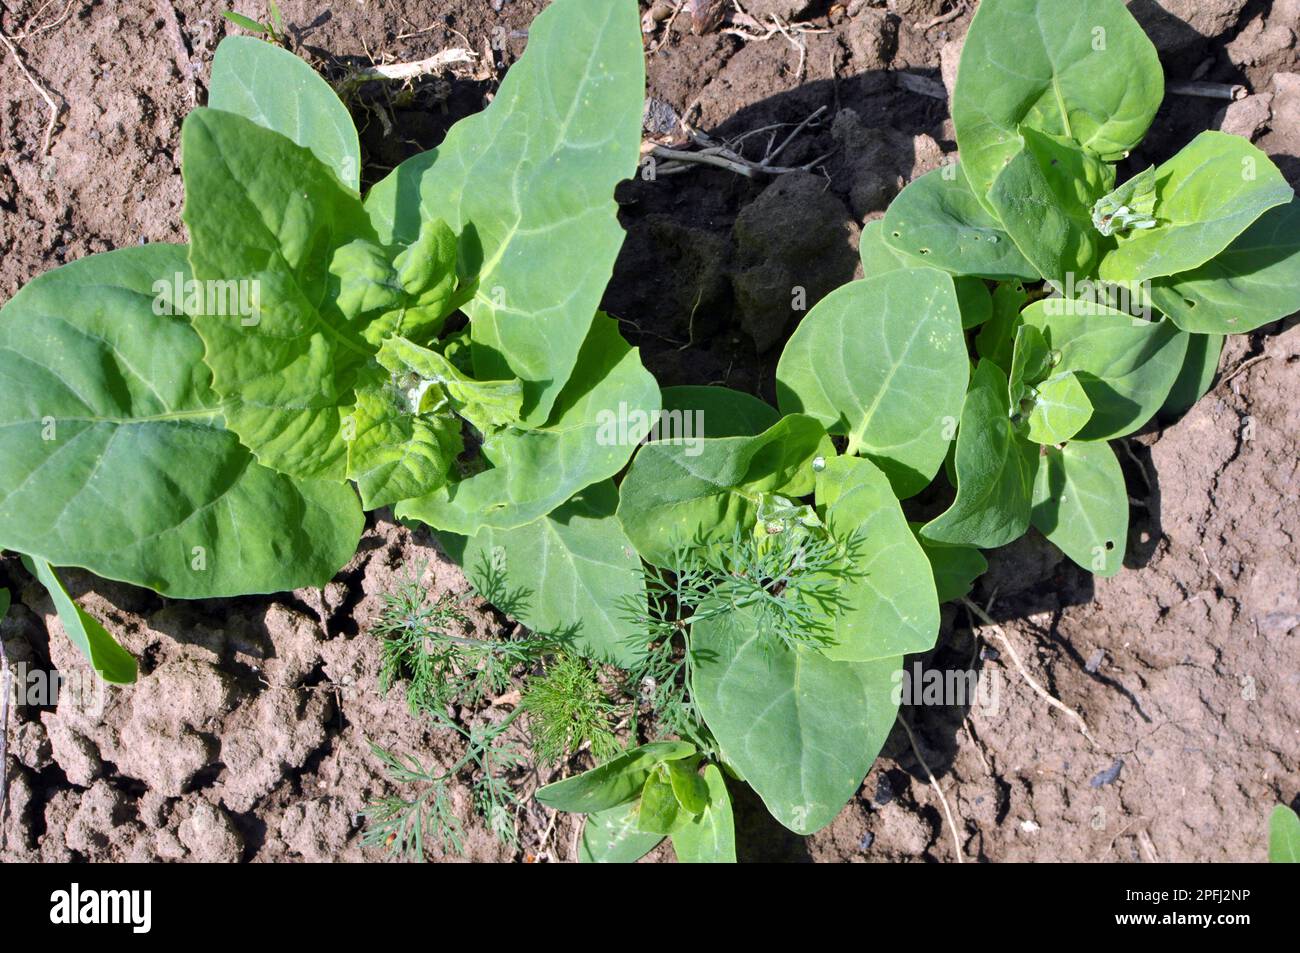 In spring, the edible plant orach (Atriplex hortensis) grows in the garden Stock Photo